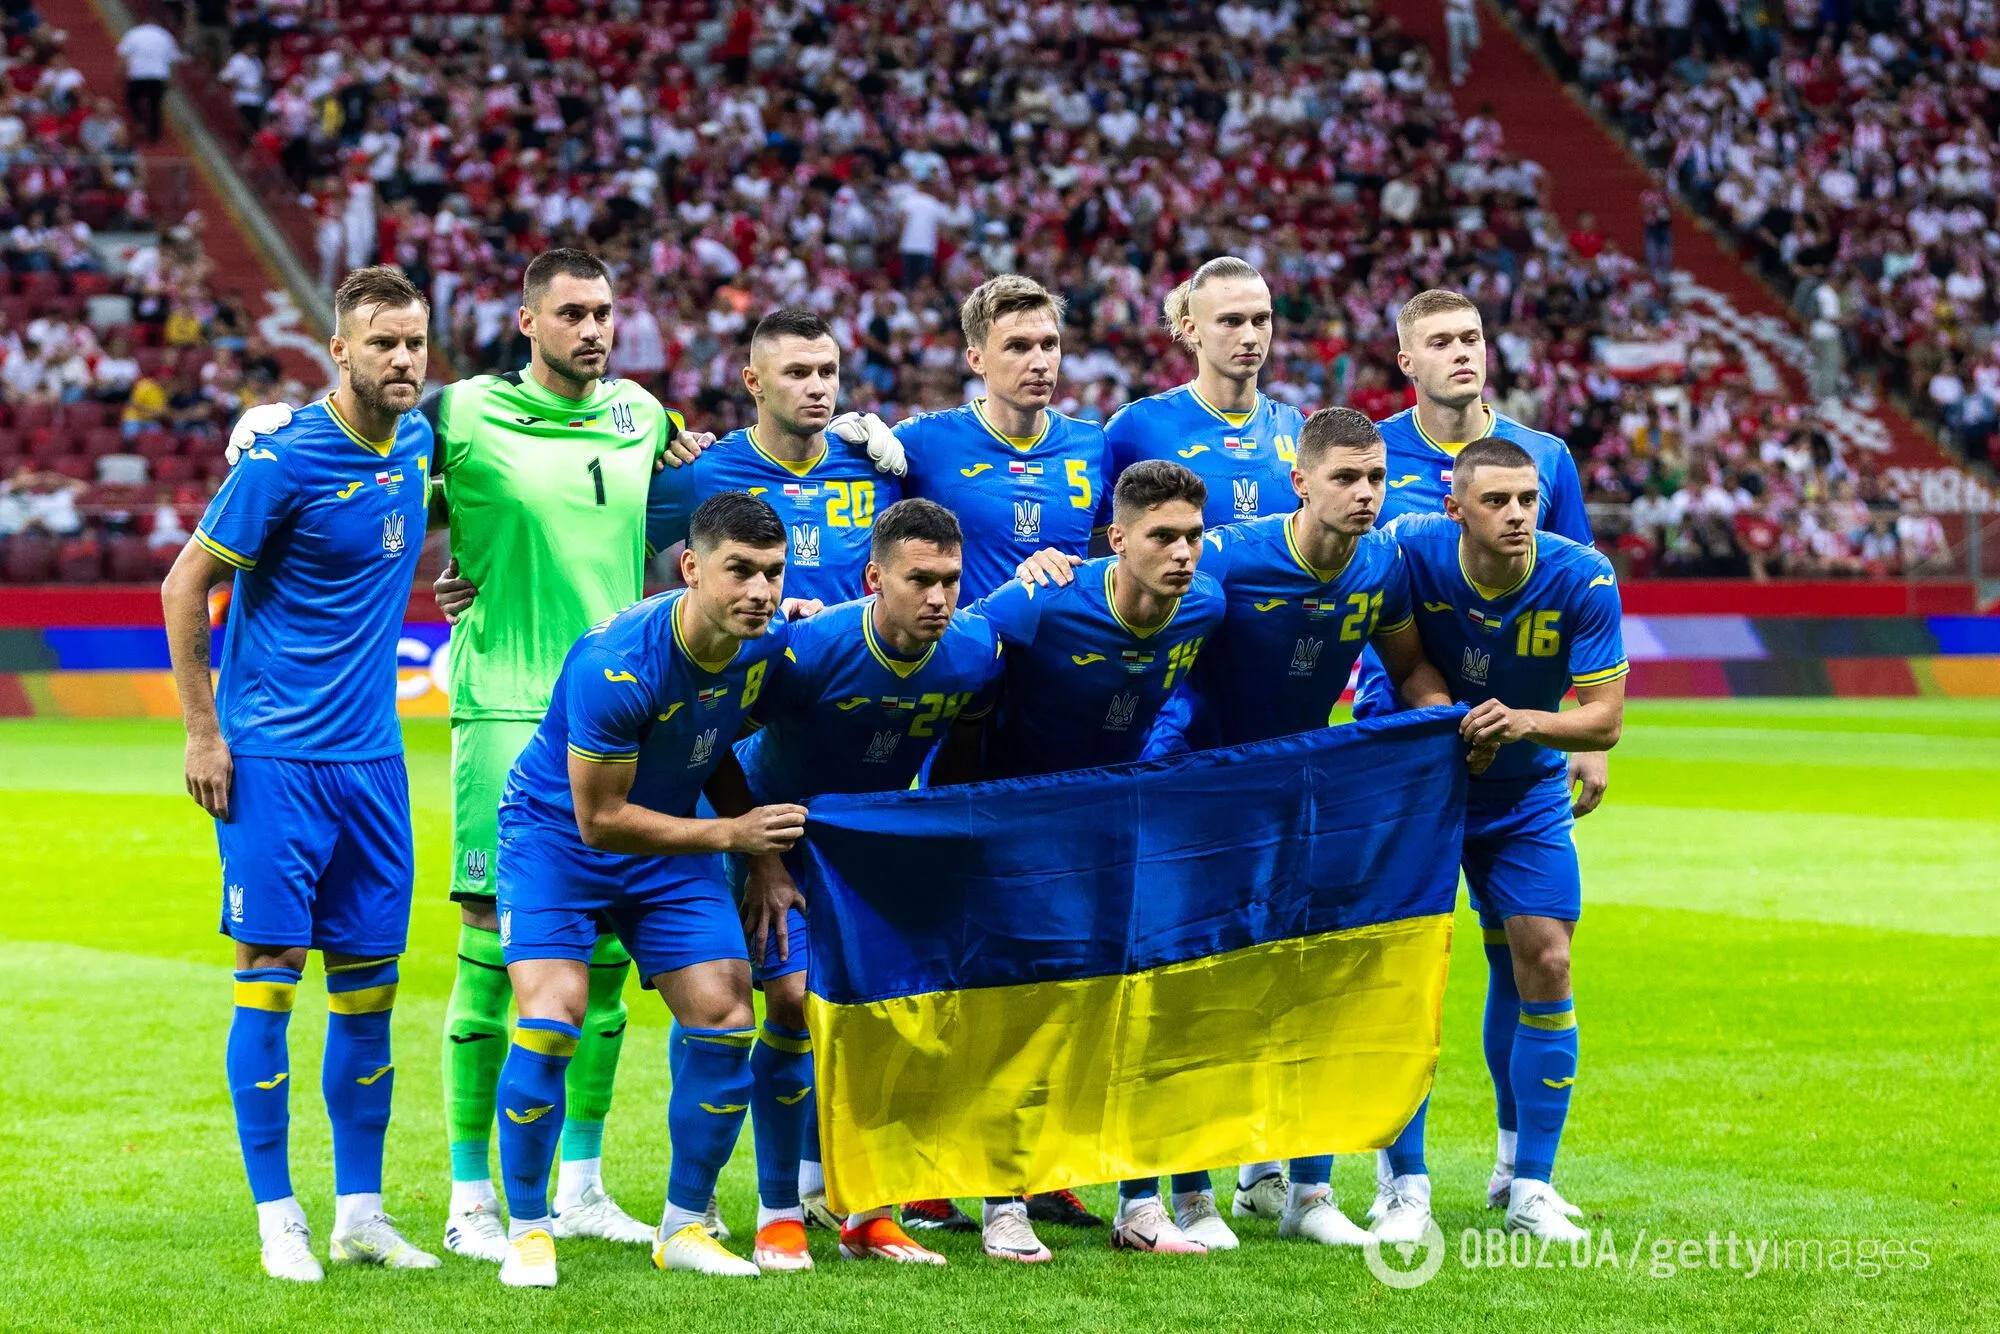 Скільки коштує Україна та який рекорд Євро належить нашому форварду: все про "синьо-жовтих" на чемпіонатах Європи